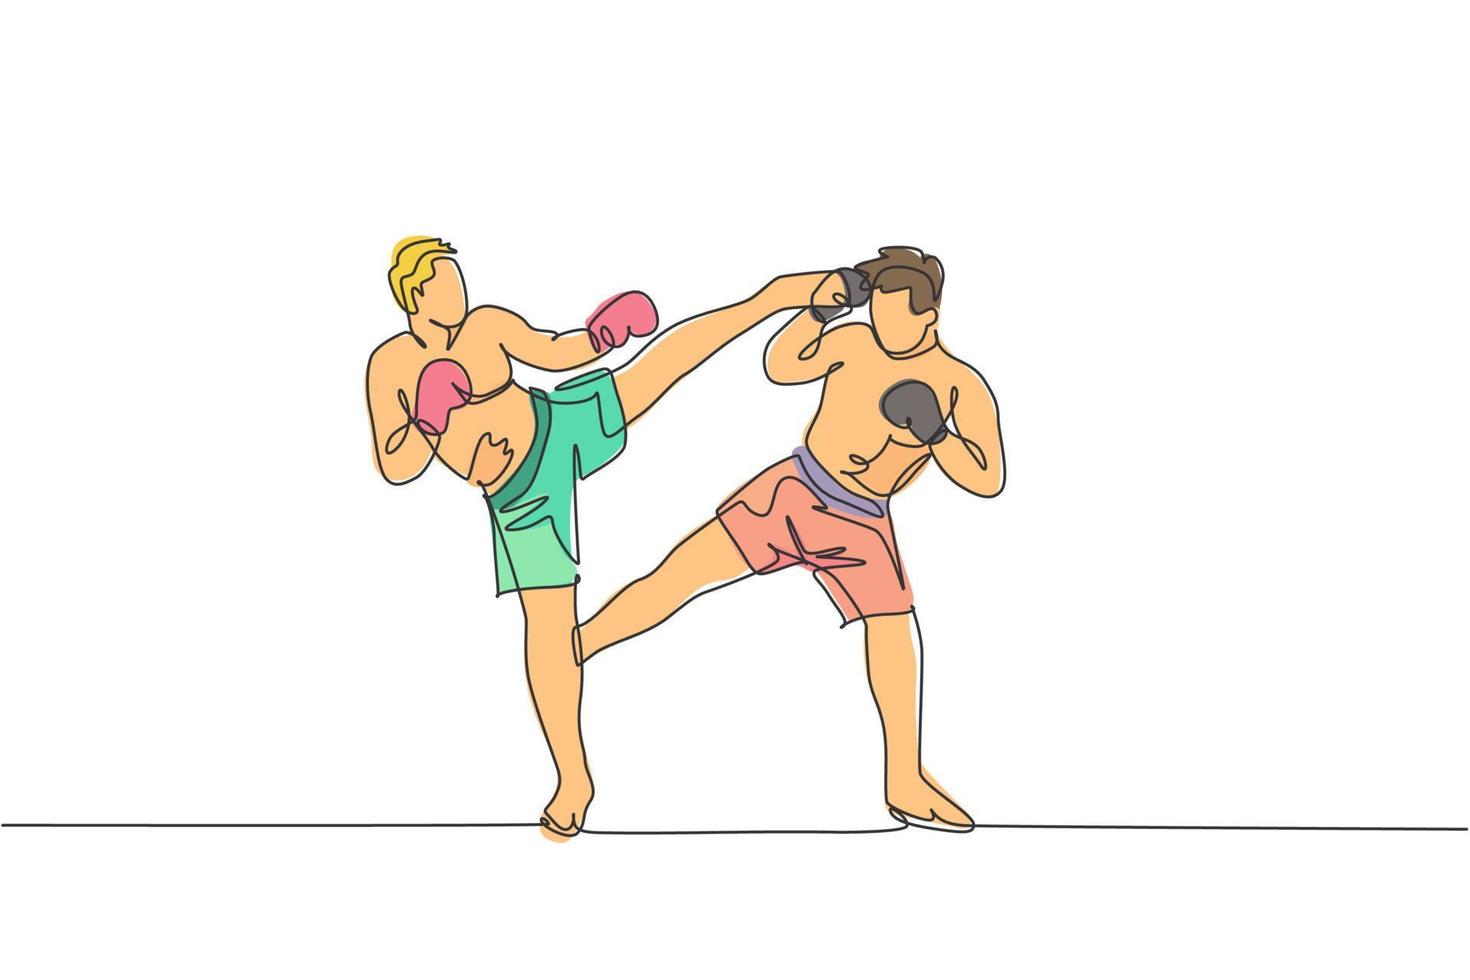 un disegno a linea singola di giovane uomo energico kickboxer pratica sparring combattimento con il partner nell'illustrazione vettoriale dell'arena di boxe. concetto di sport di stile di vita sano. moderno disegno a linea continua